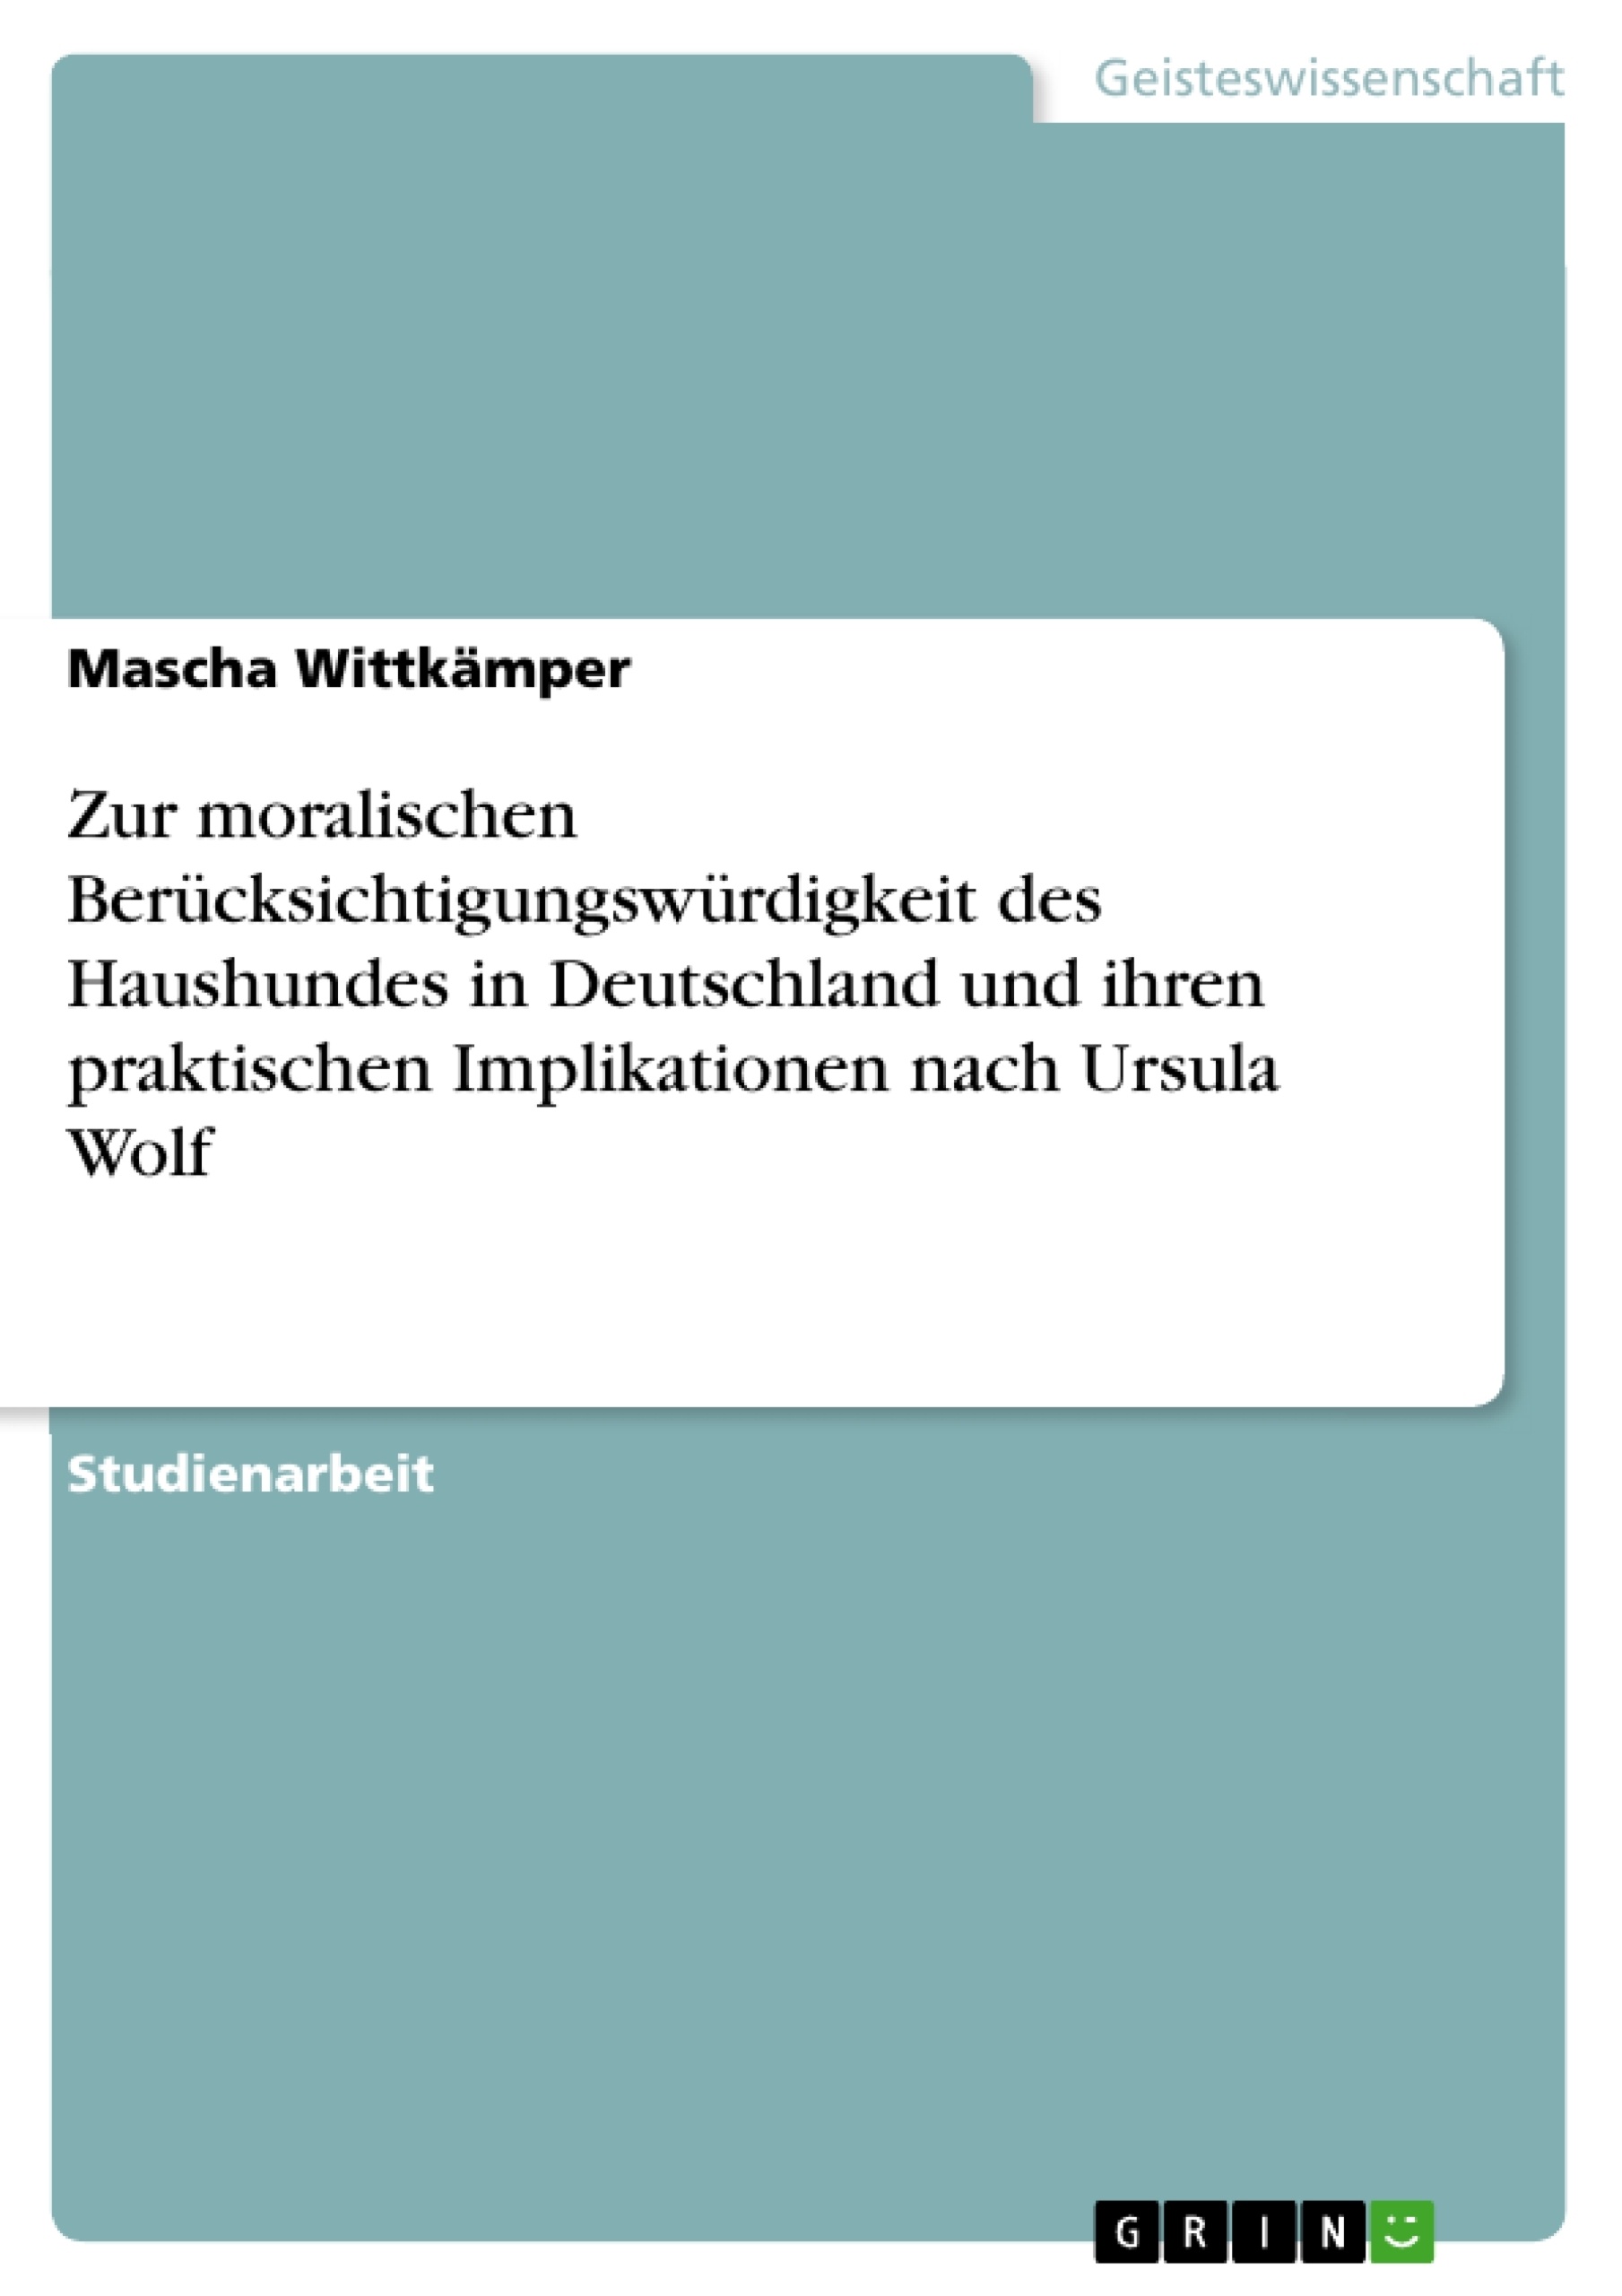 Title: Zur moralischen Berücksichtigungswürdigkeit des Haushundes in Deutschland und ihren praktischen Implikationen nach Ursula Wolf